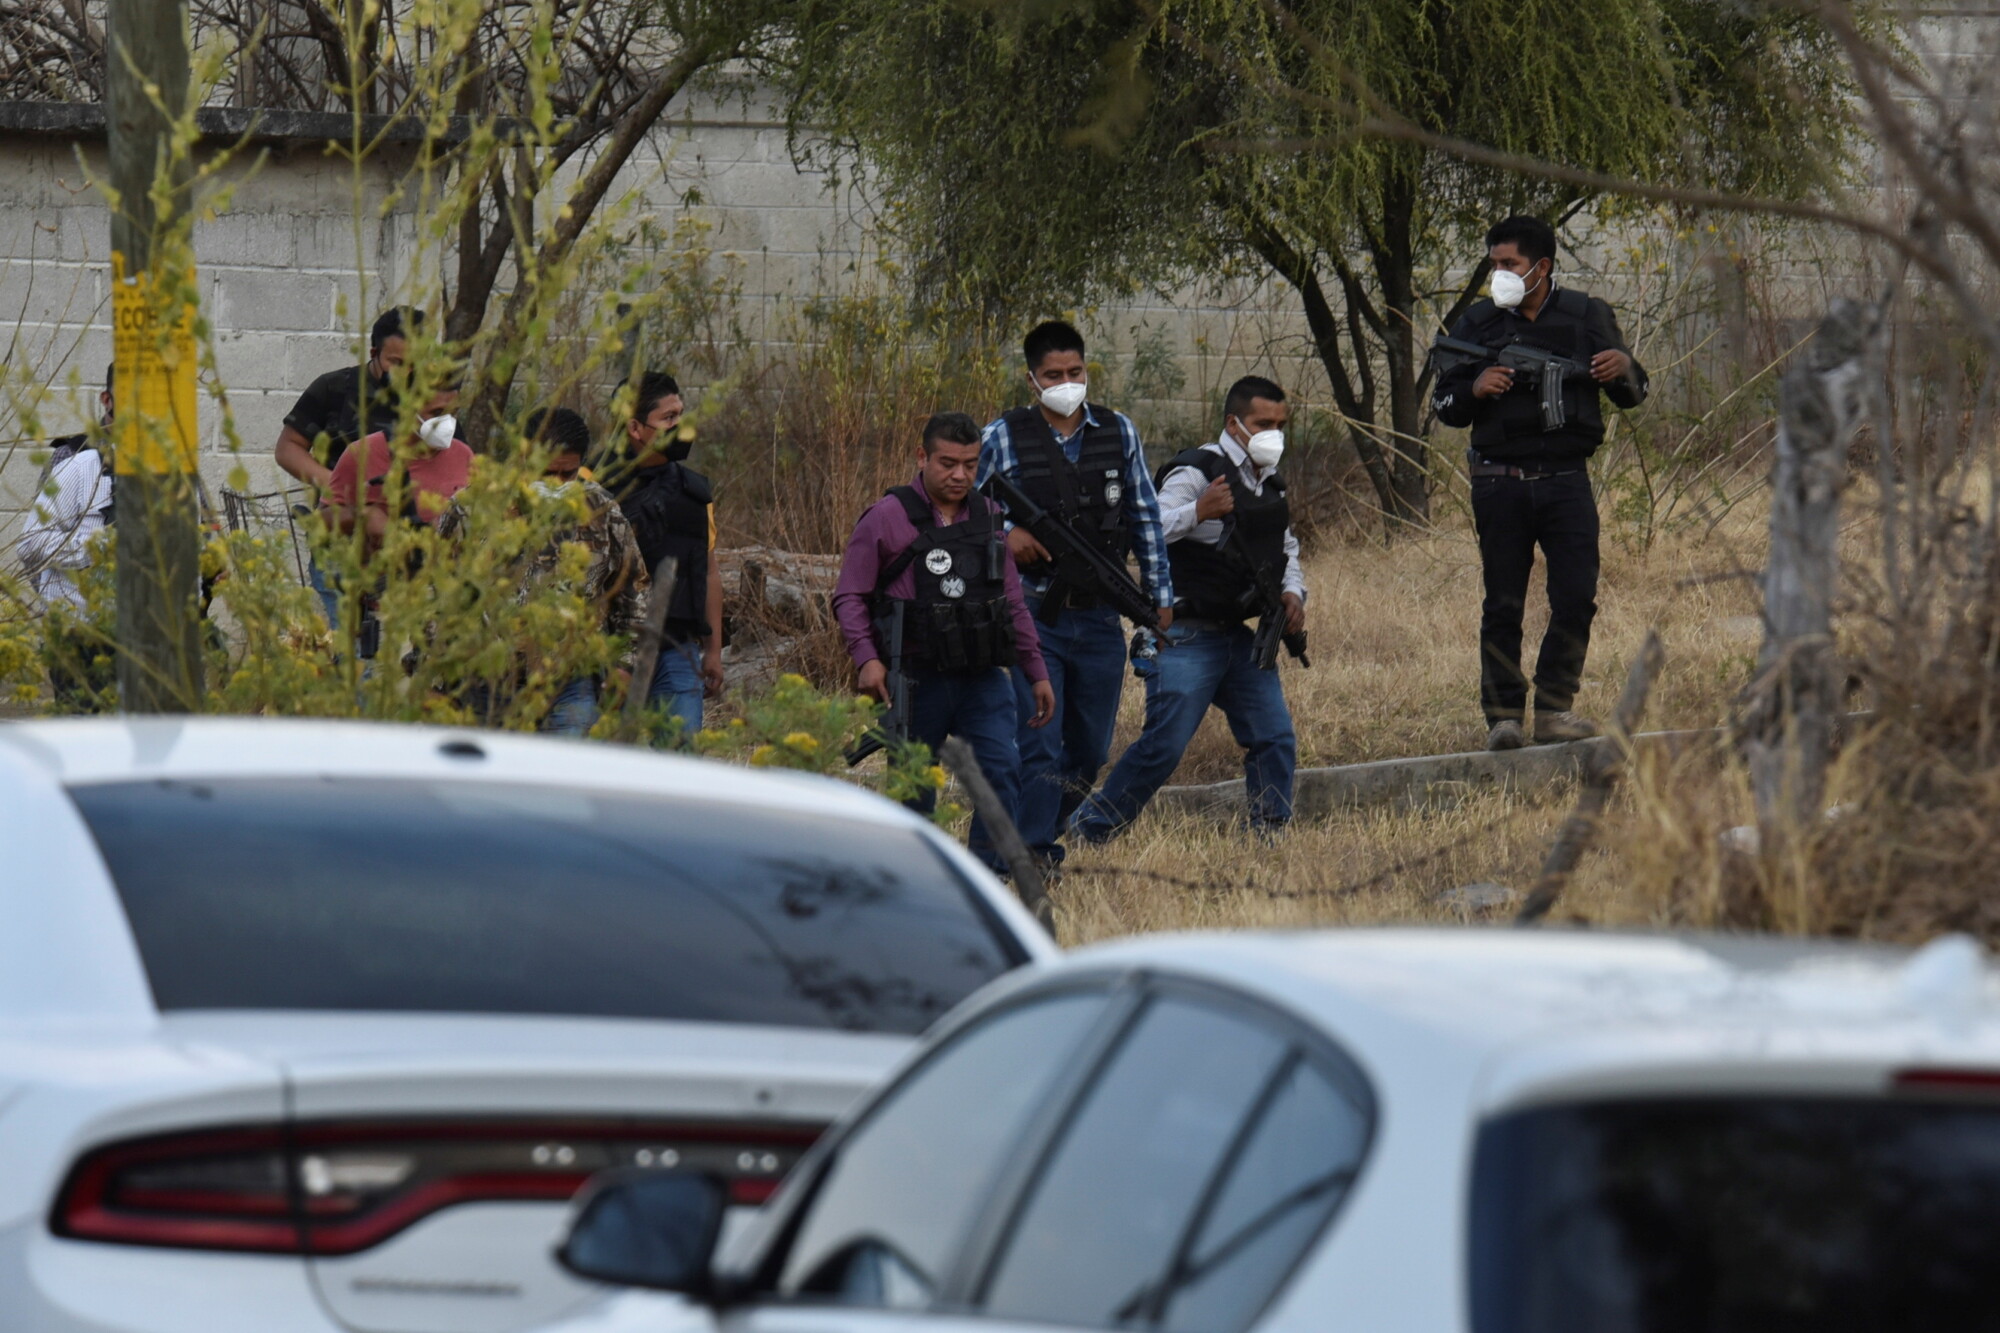 Gunmen Kill 13 Police in Daytime Ambush in Central Mexico